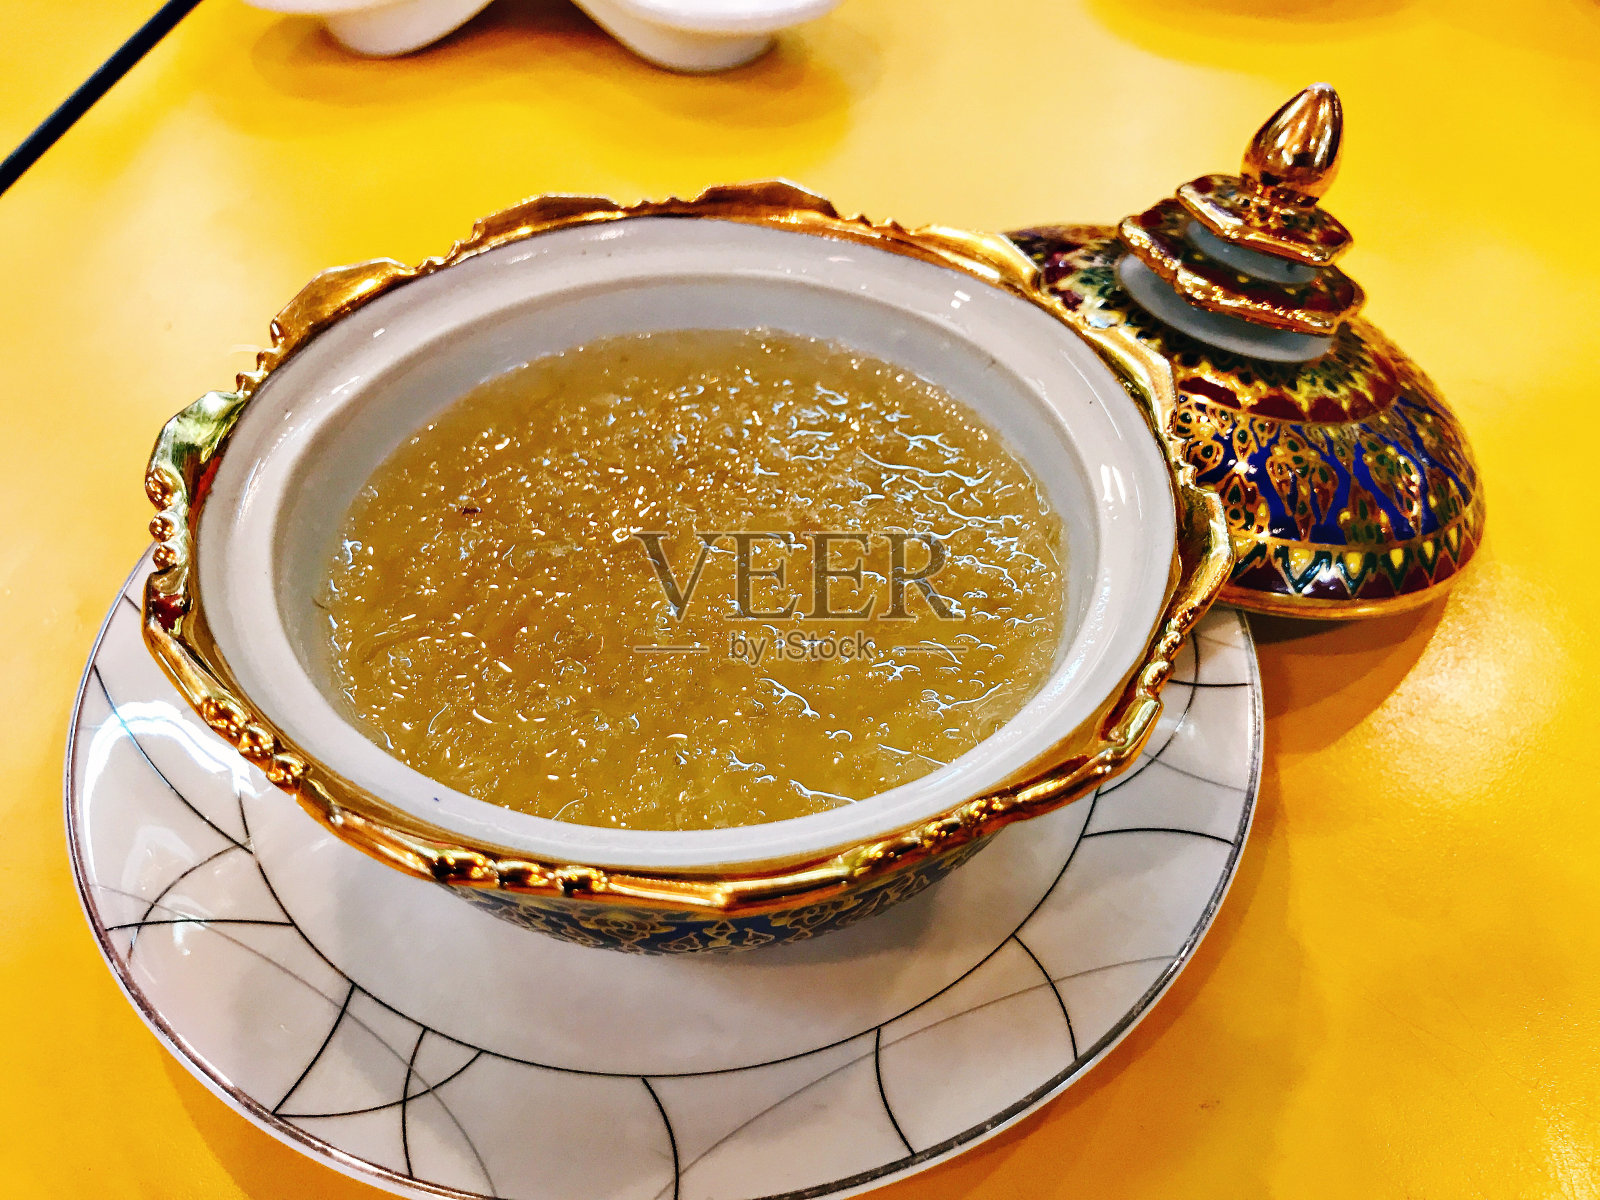 泰国benjarong(五色瓷)碗中燕窝汤。照片摄影图片